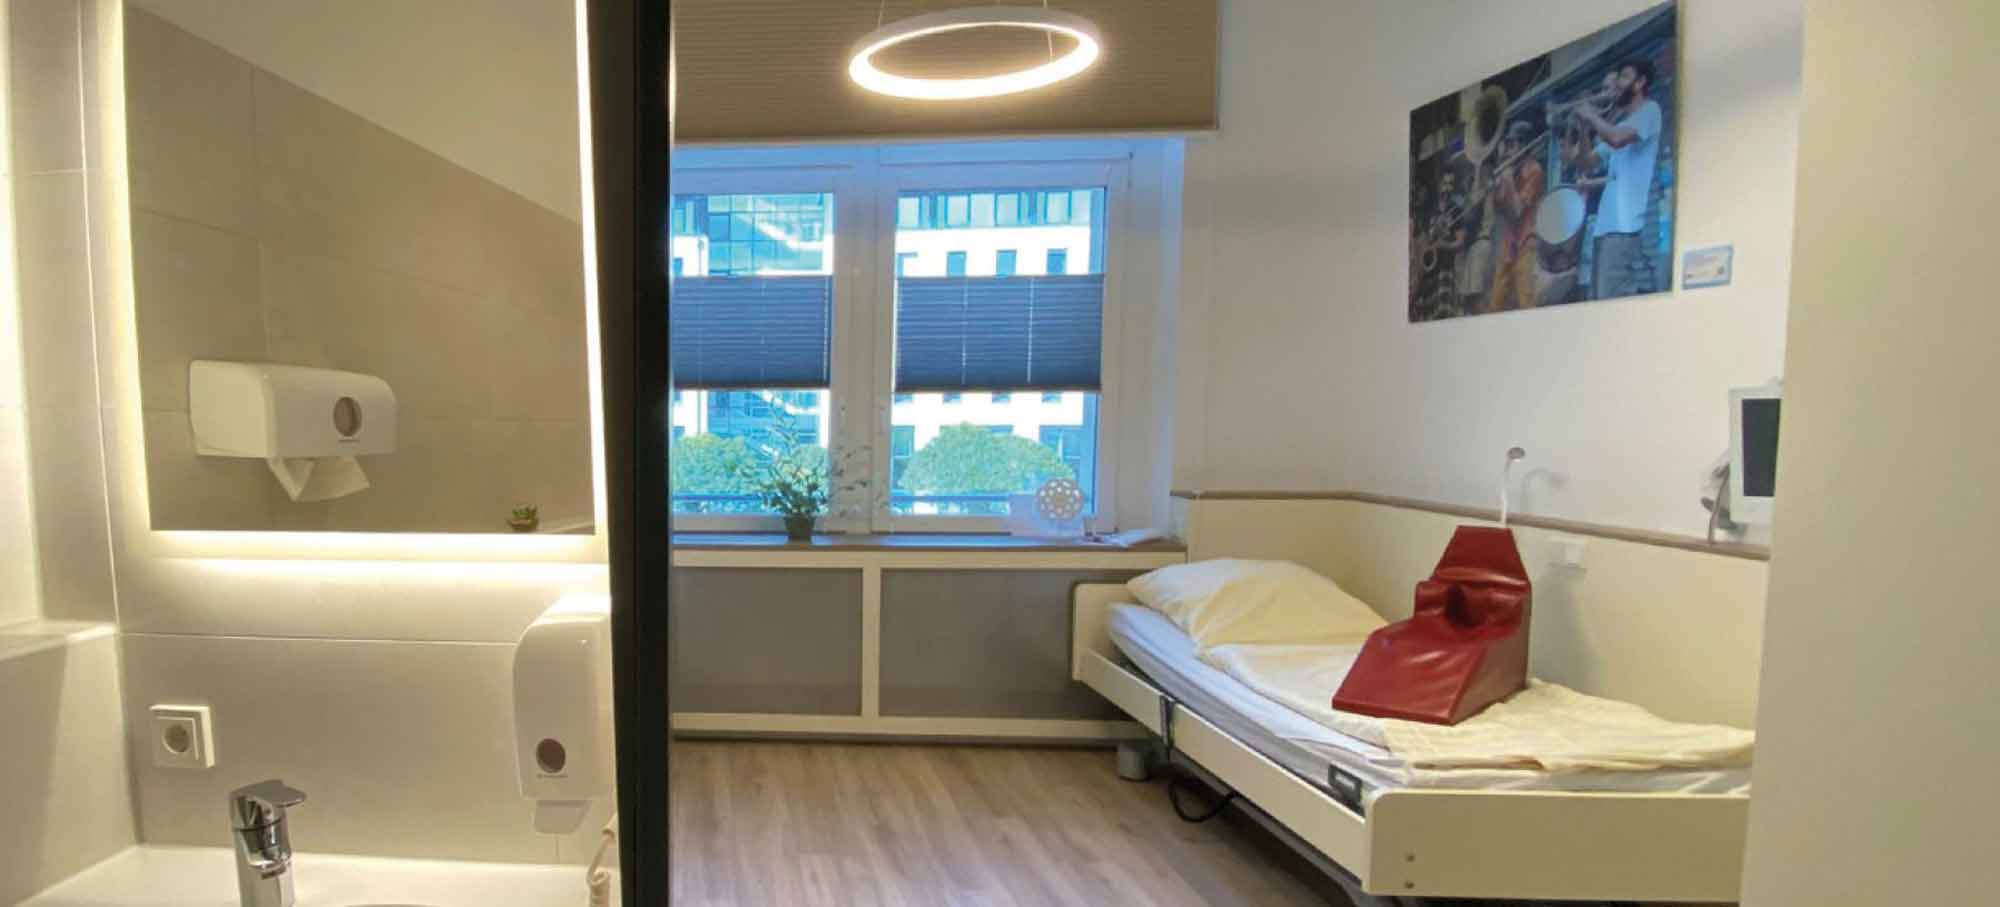 Doppelzimmer mit Bad | MVZ im Alstadtquartier Magdeburg